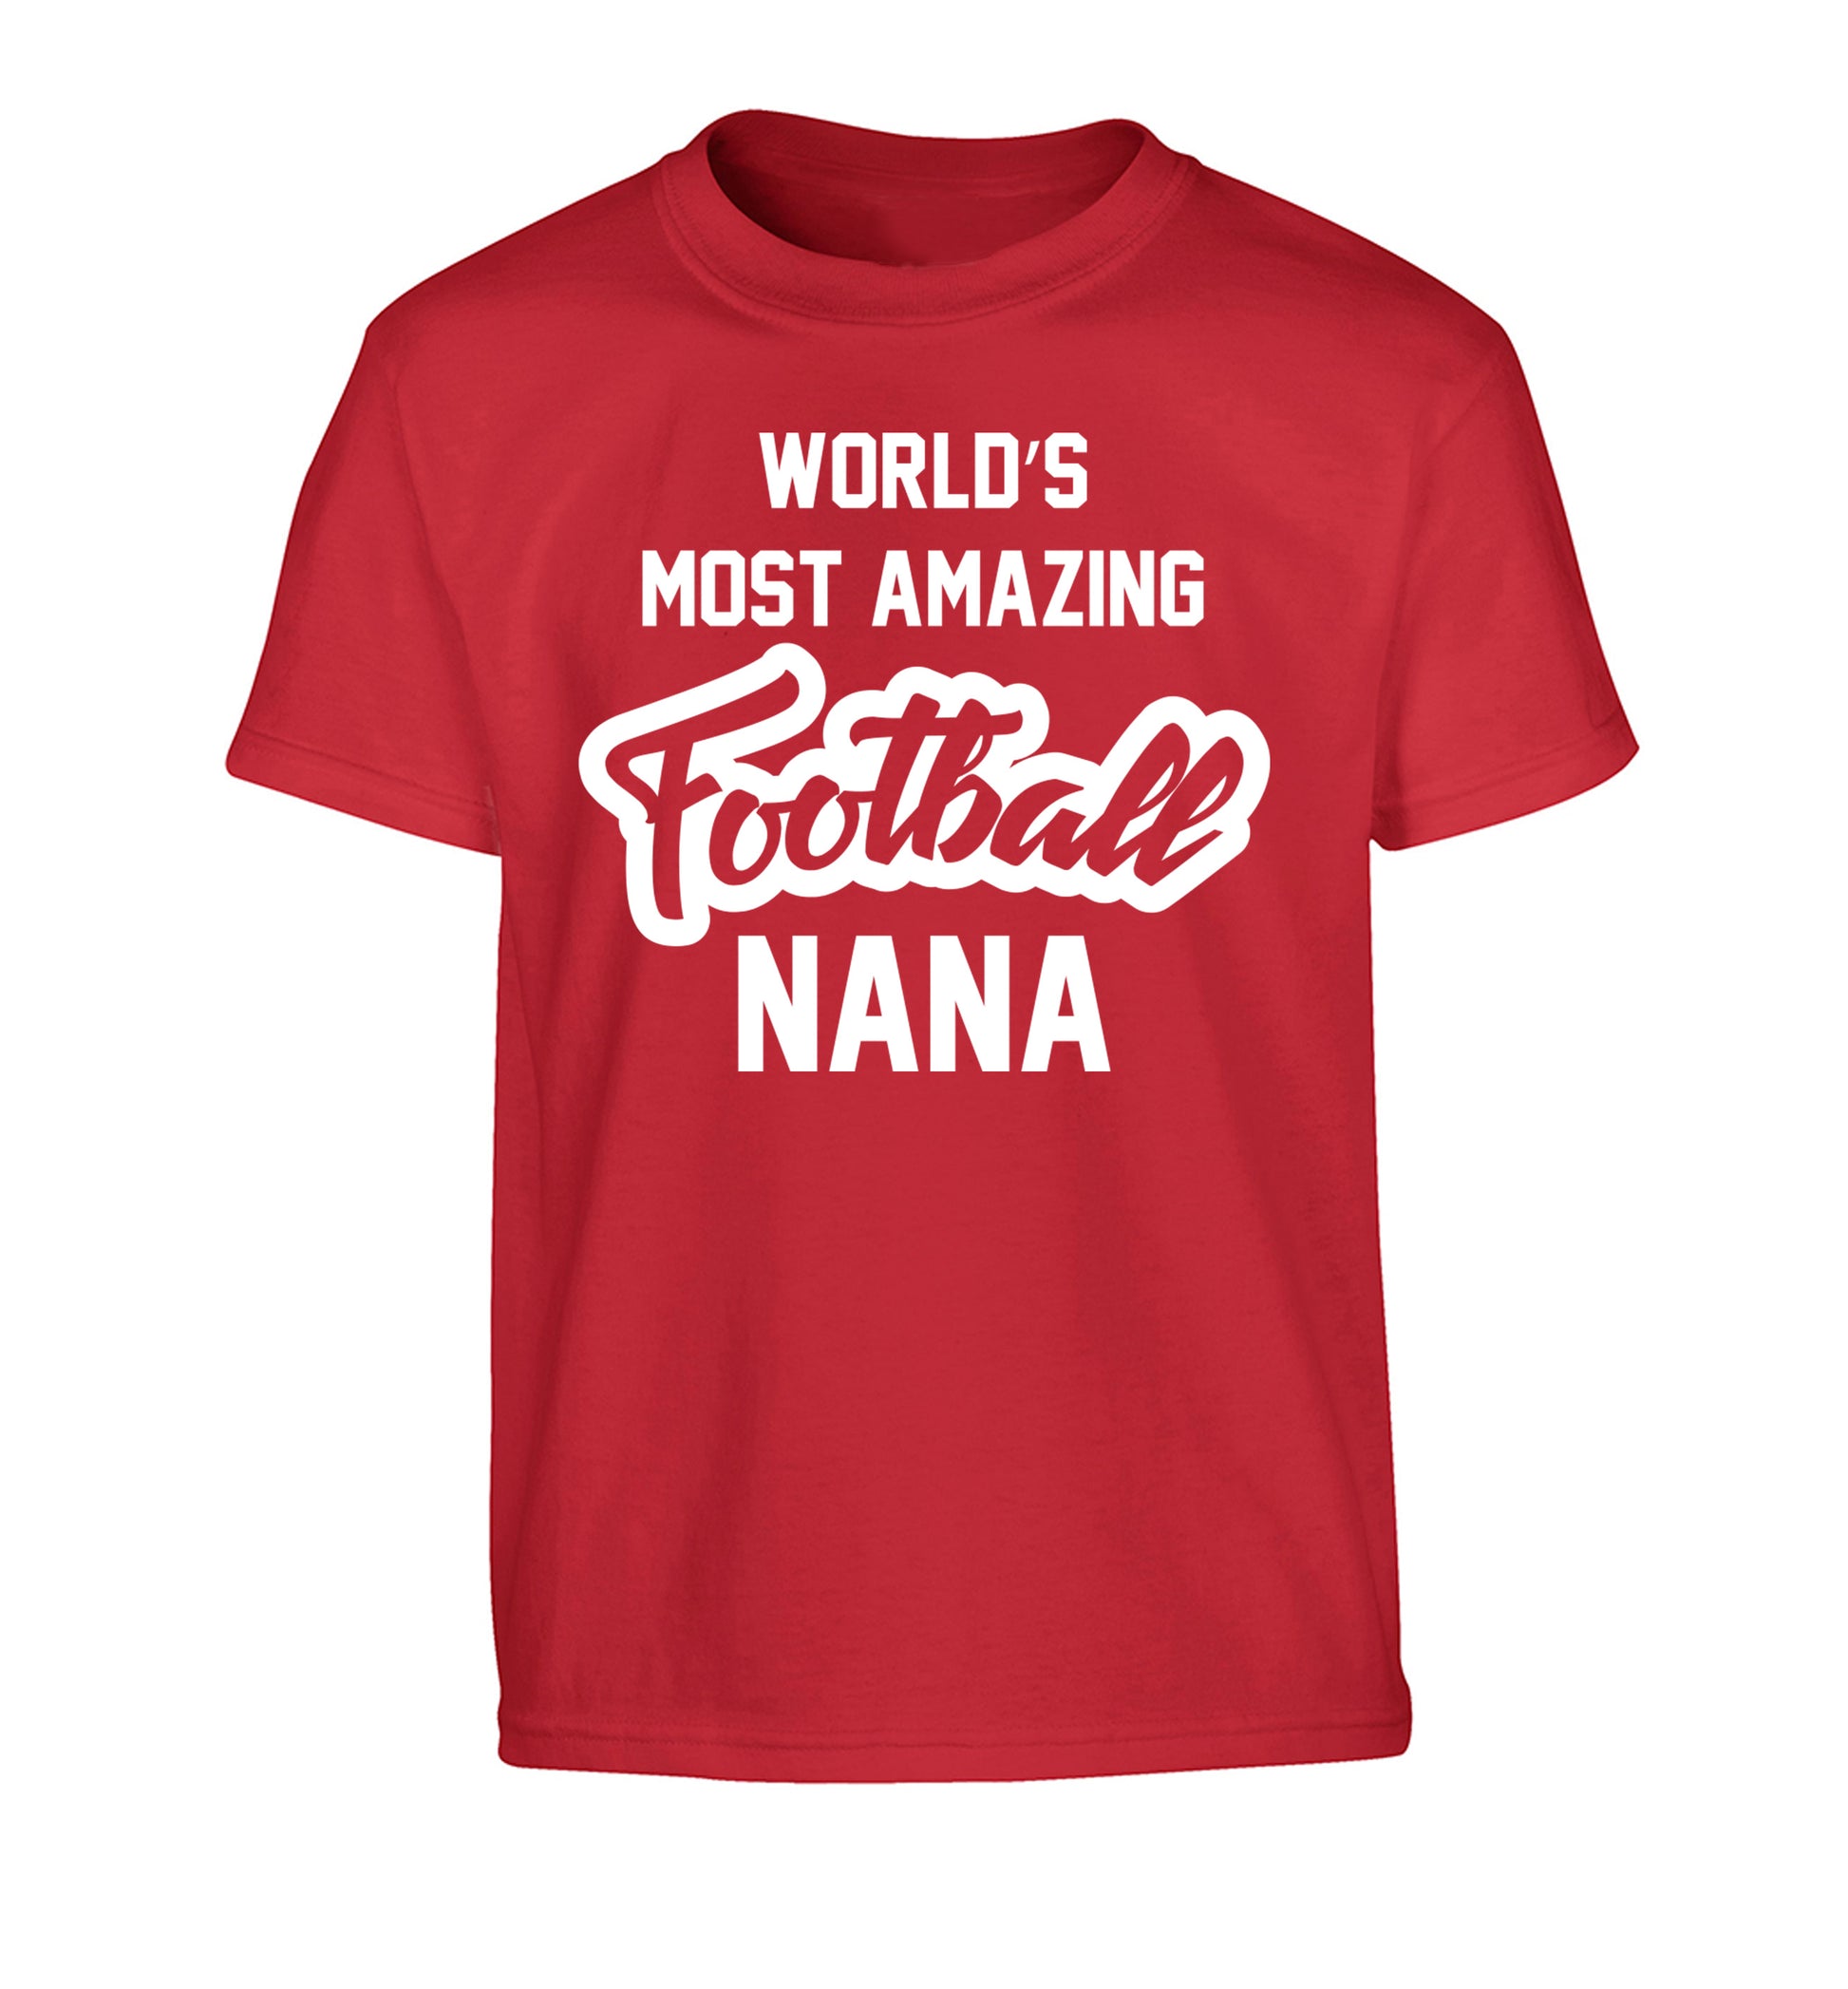 Worlds most amazing football nana Children's red Tshirt 12-14 Years